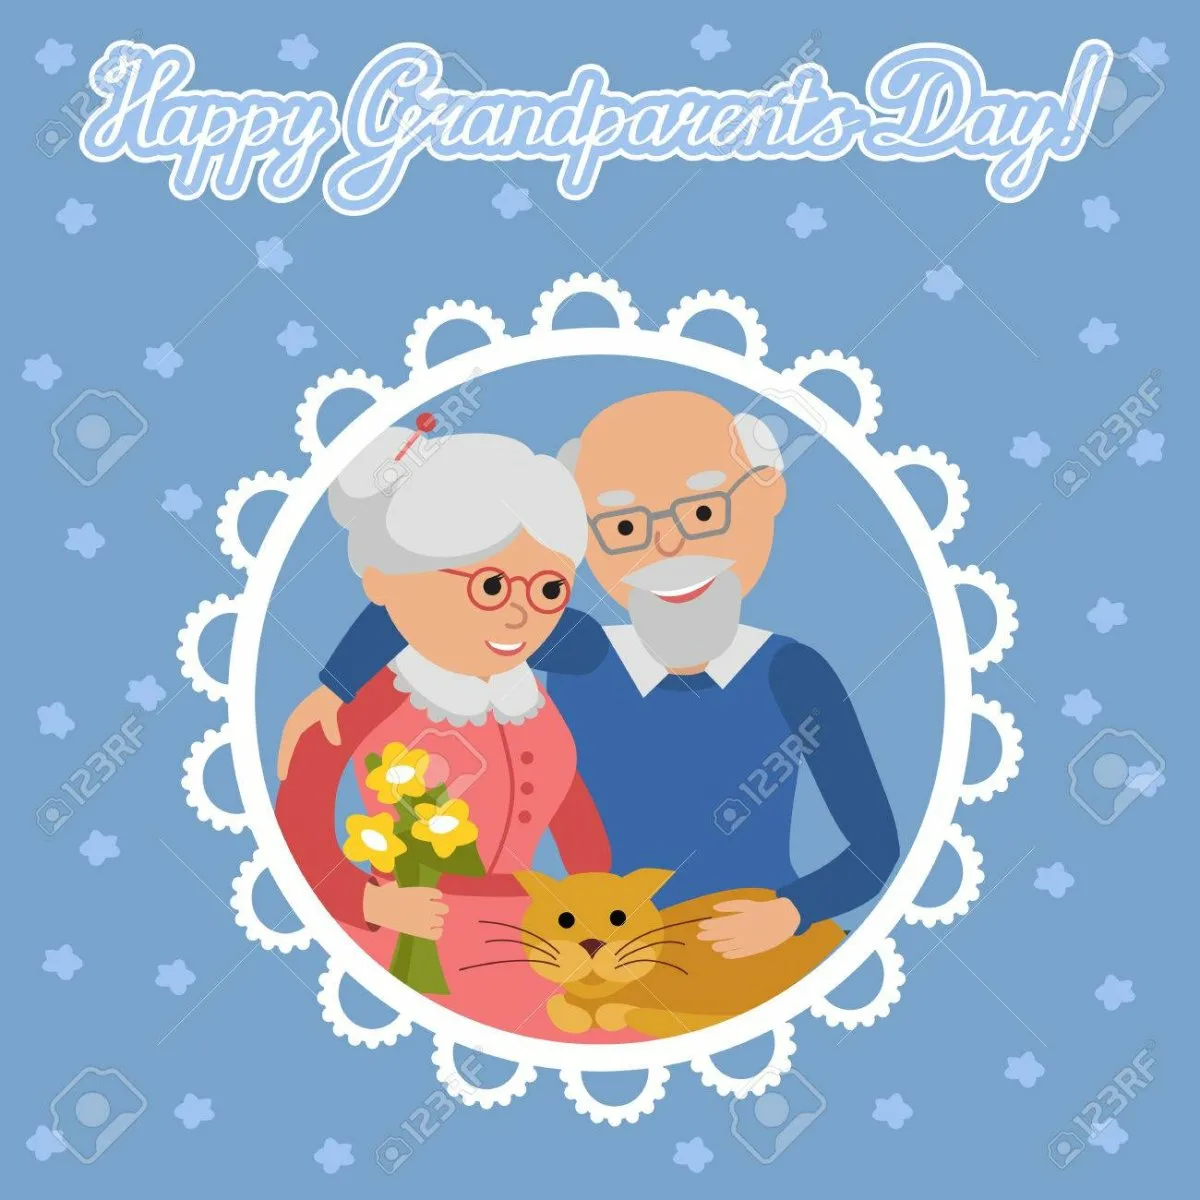 Фото Поздравления на золотую свадьбу дедушке и бабушке от внуков #55